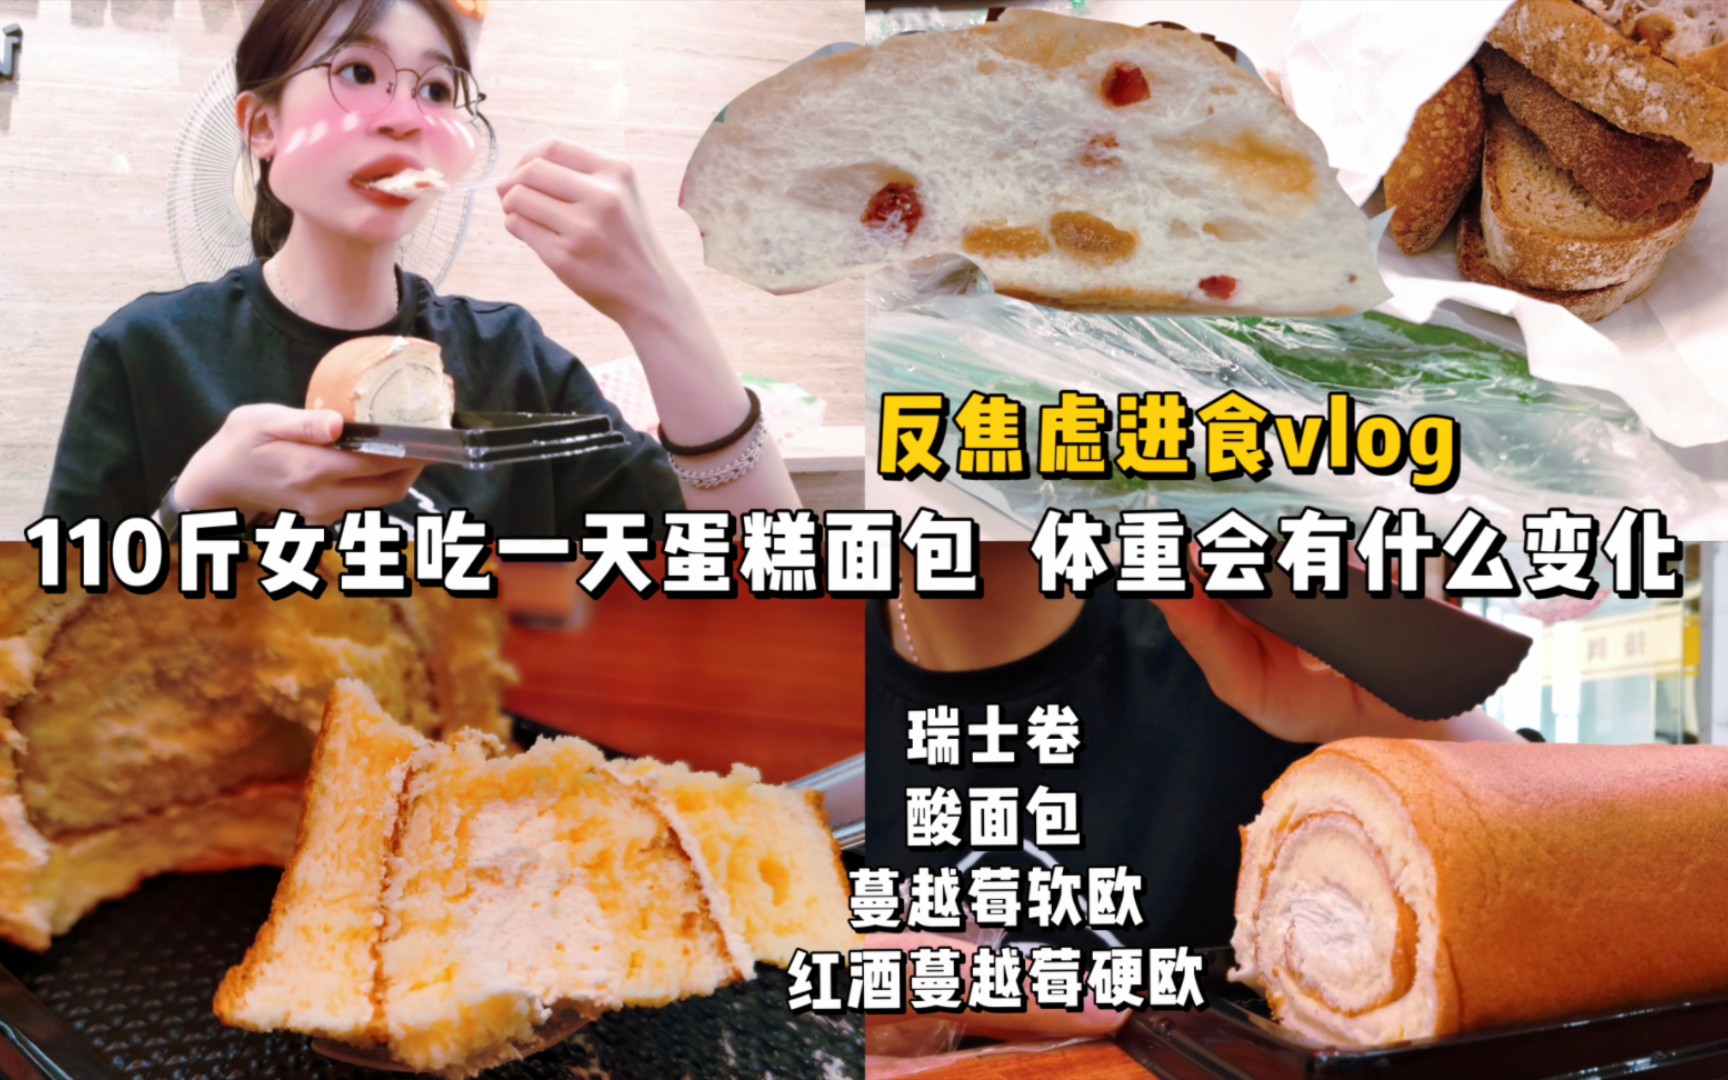 吃面包的女人图片免费下载-5155393812-千图网Pro